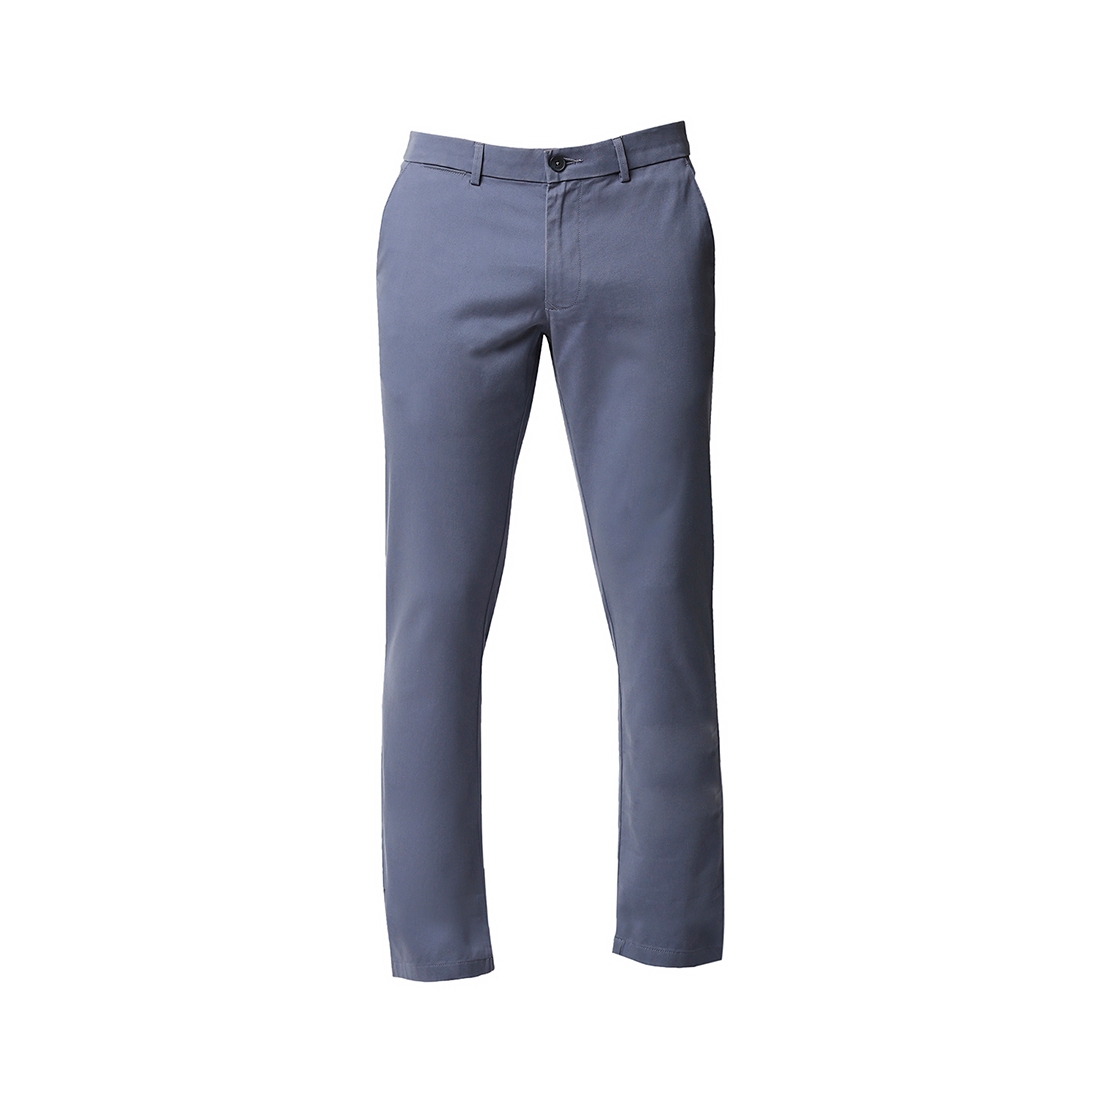 Basics | Men's Blue Cotton Blend Solid Trouser 5